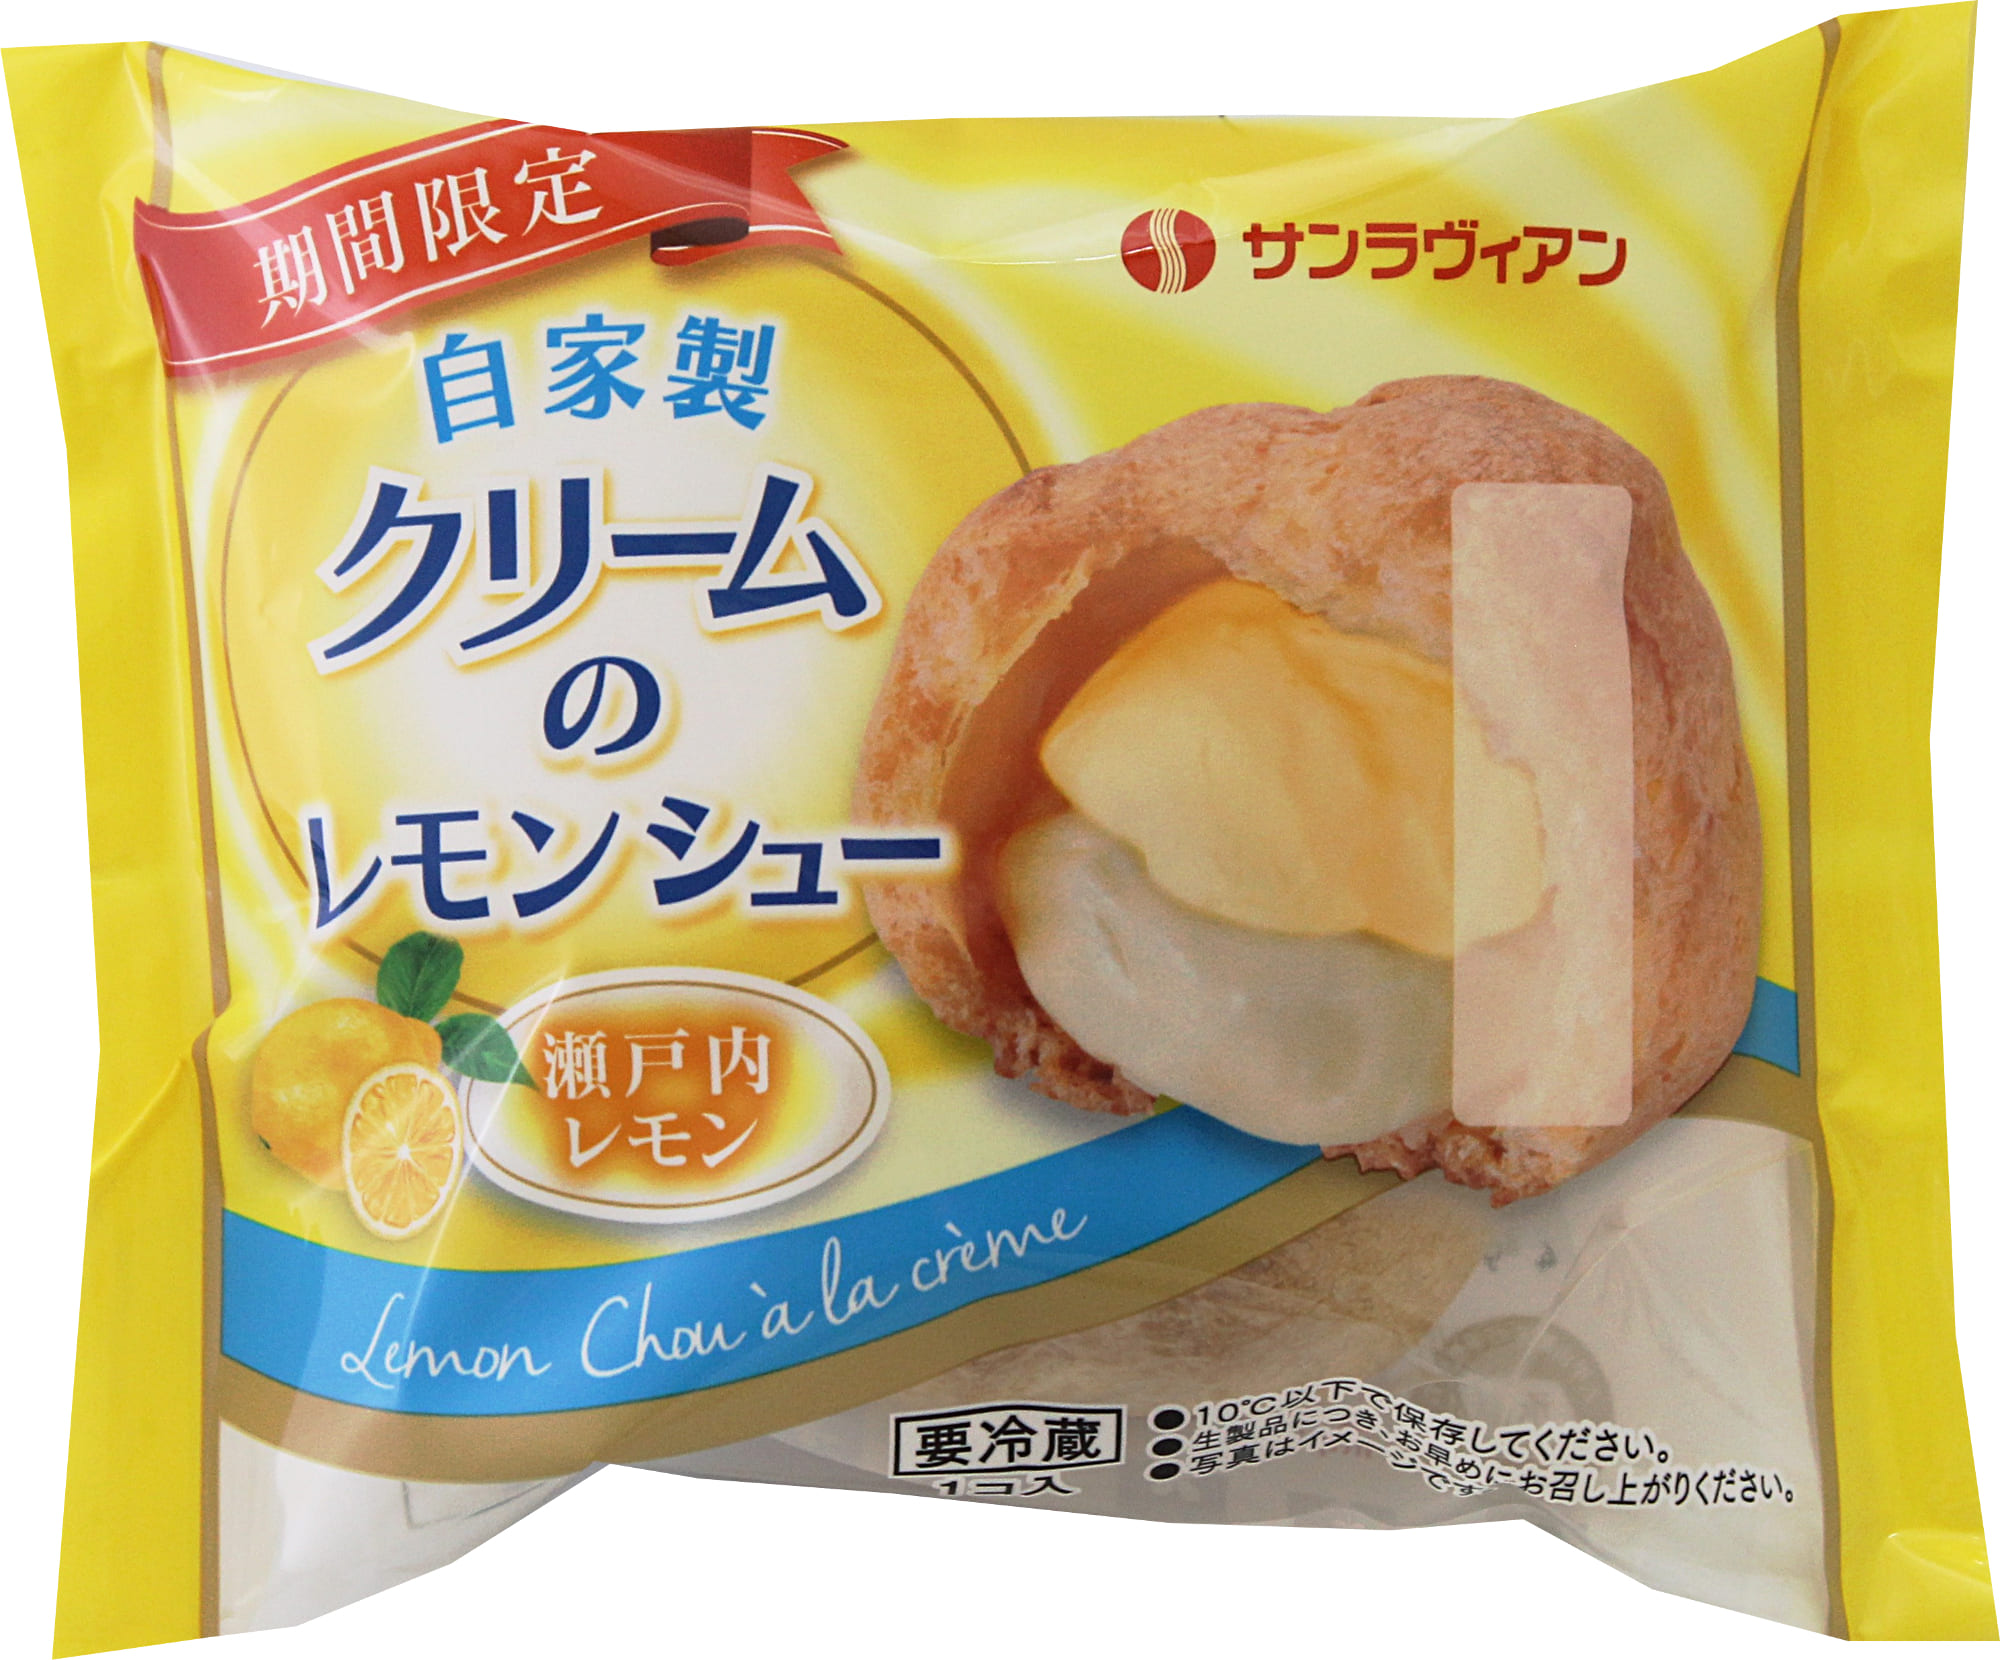 「自家製クリームのレモンシュー」税抜き110円